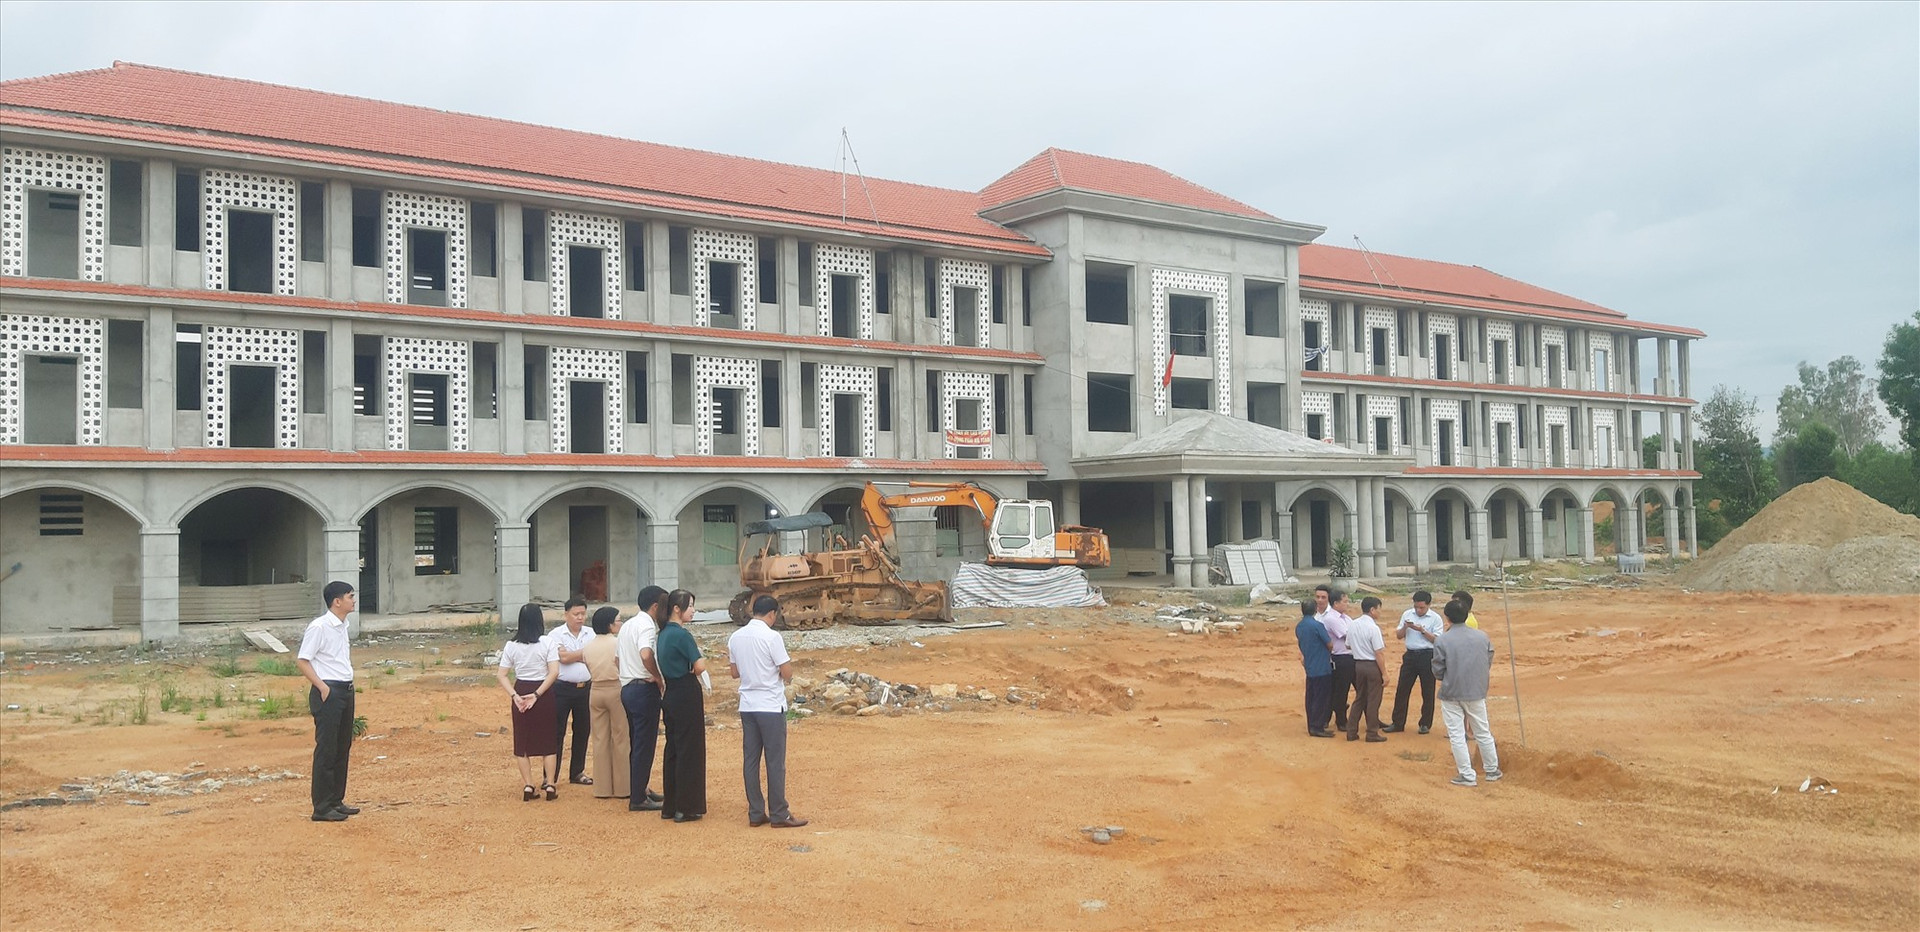 Công trình Trường THPT Trần Đại Nghĩa đang thi công dang dở.   Ảnh: PV